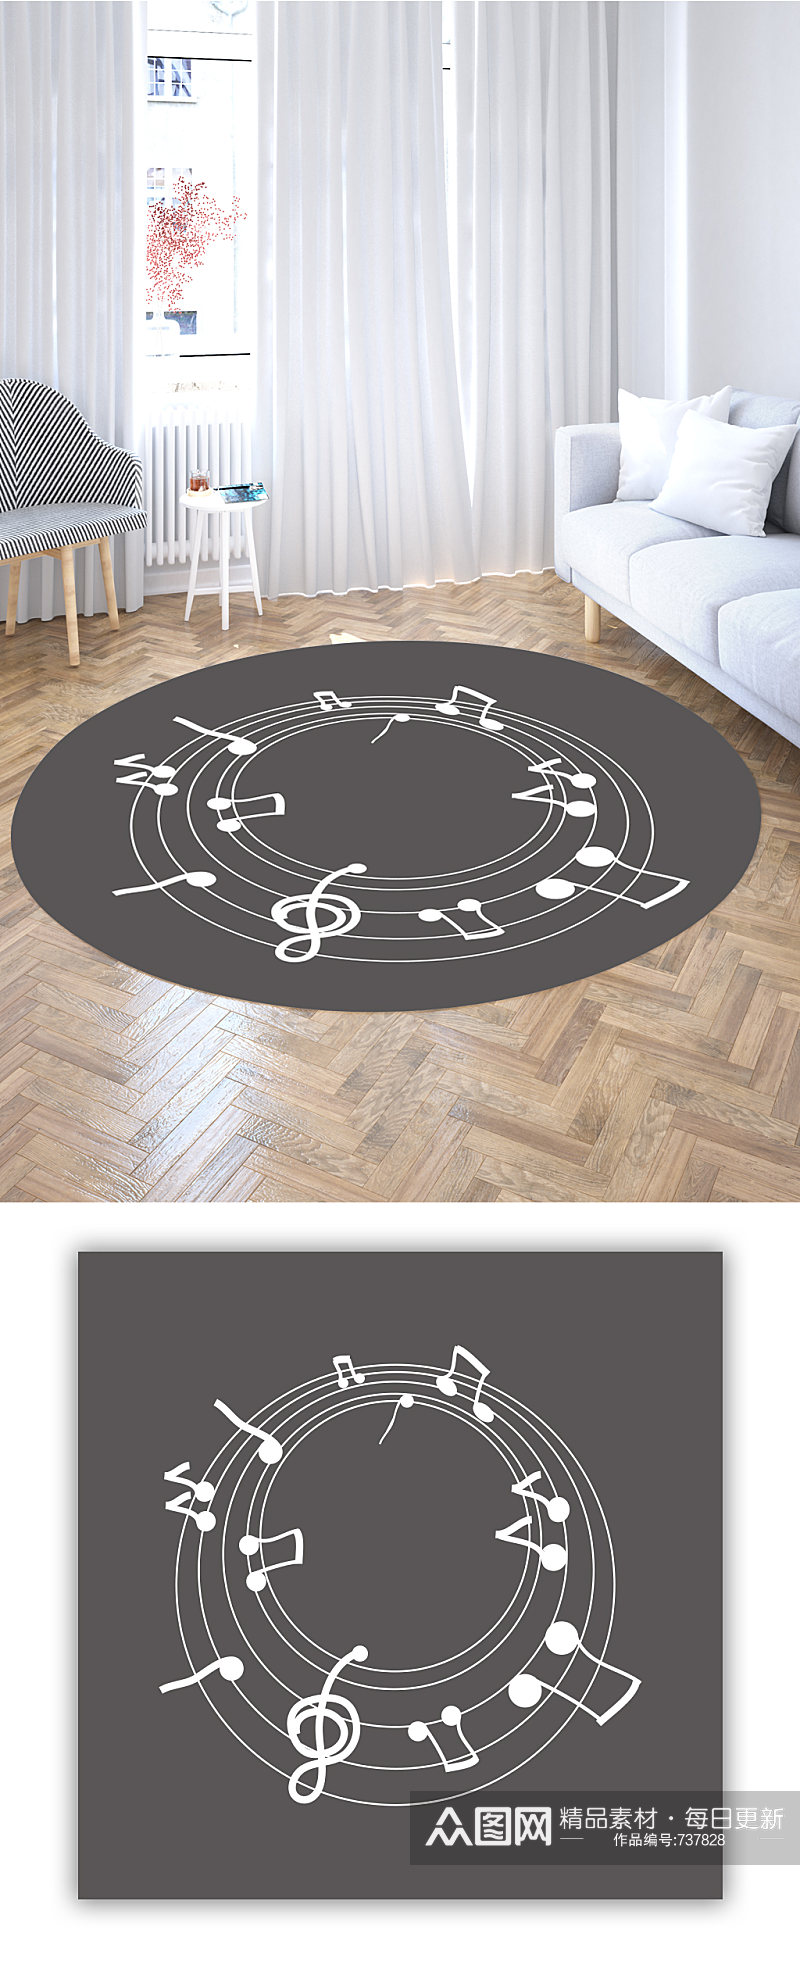 圆形地毯音乐音符素材